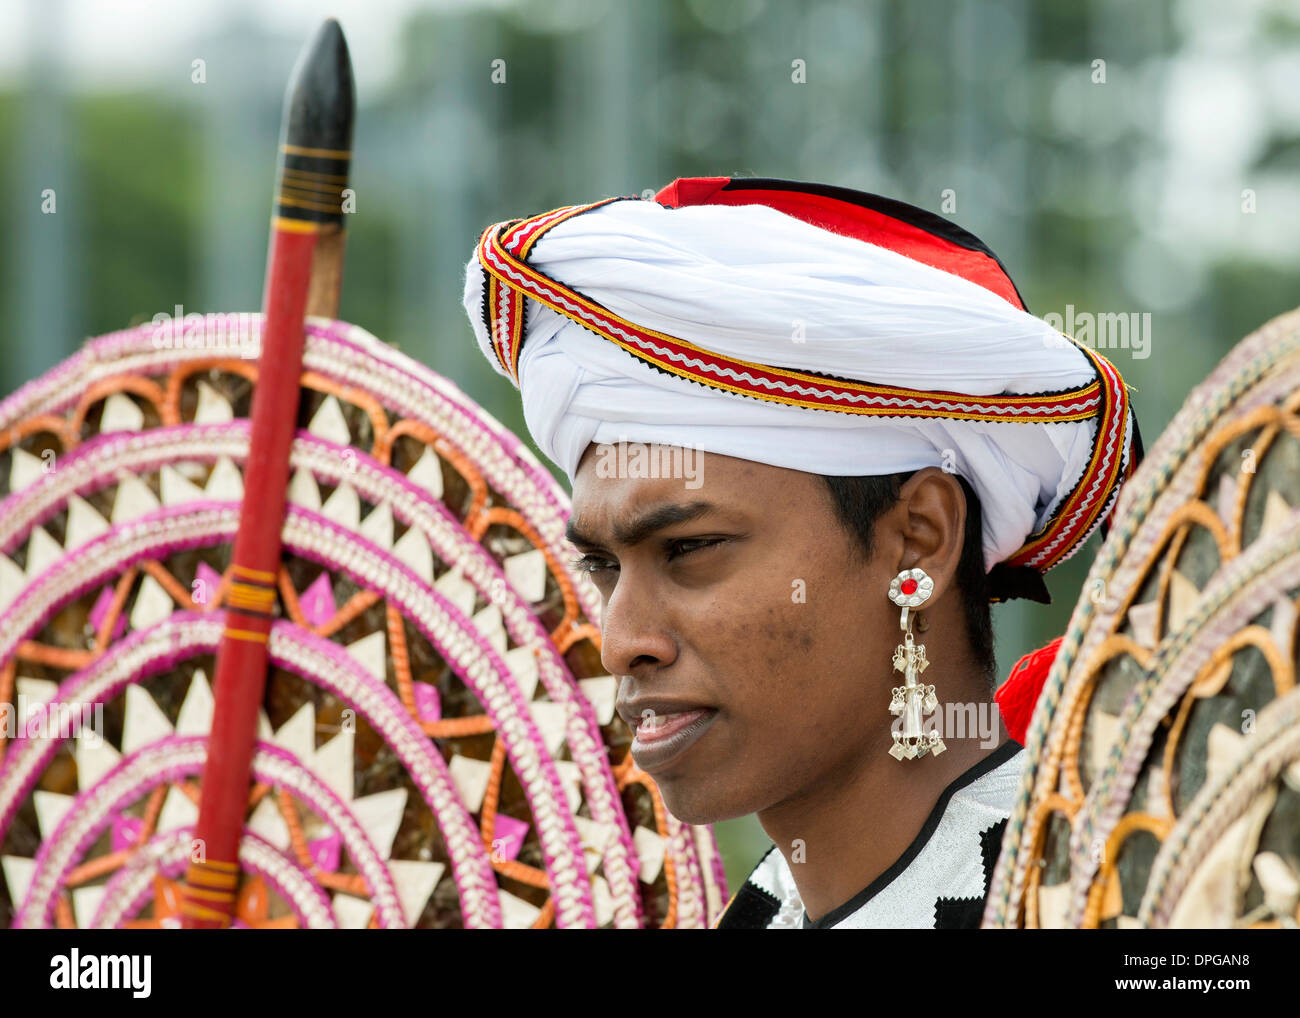 Nahaufnahme von Sri Lanka Mann in Tracht gekleidet.  Trägt Turban Stil Kopfschmuck und reich verzierten Ohr Ring. Stockfoto